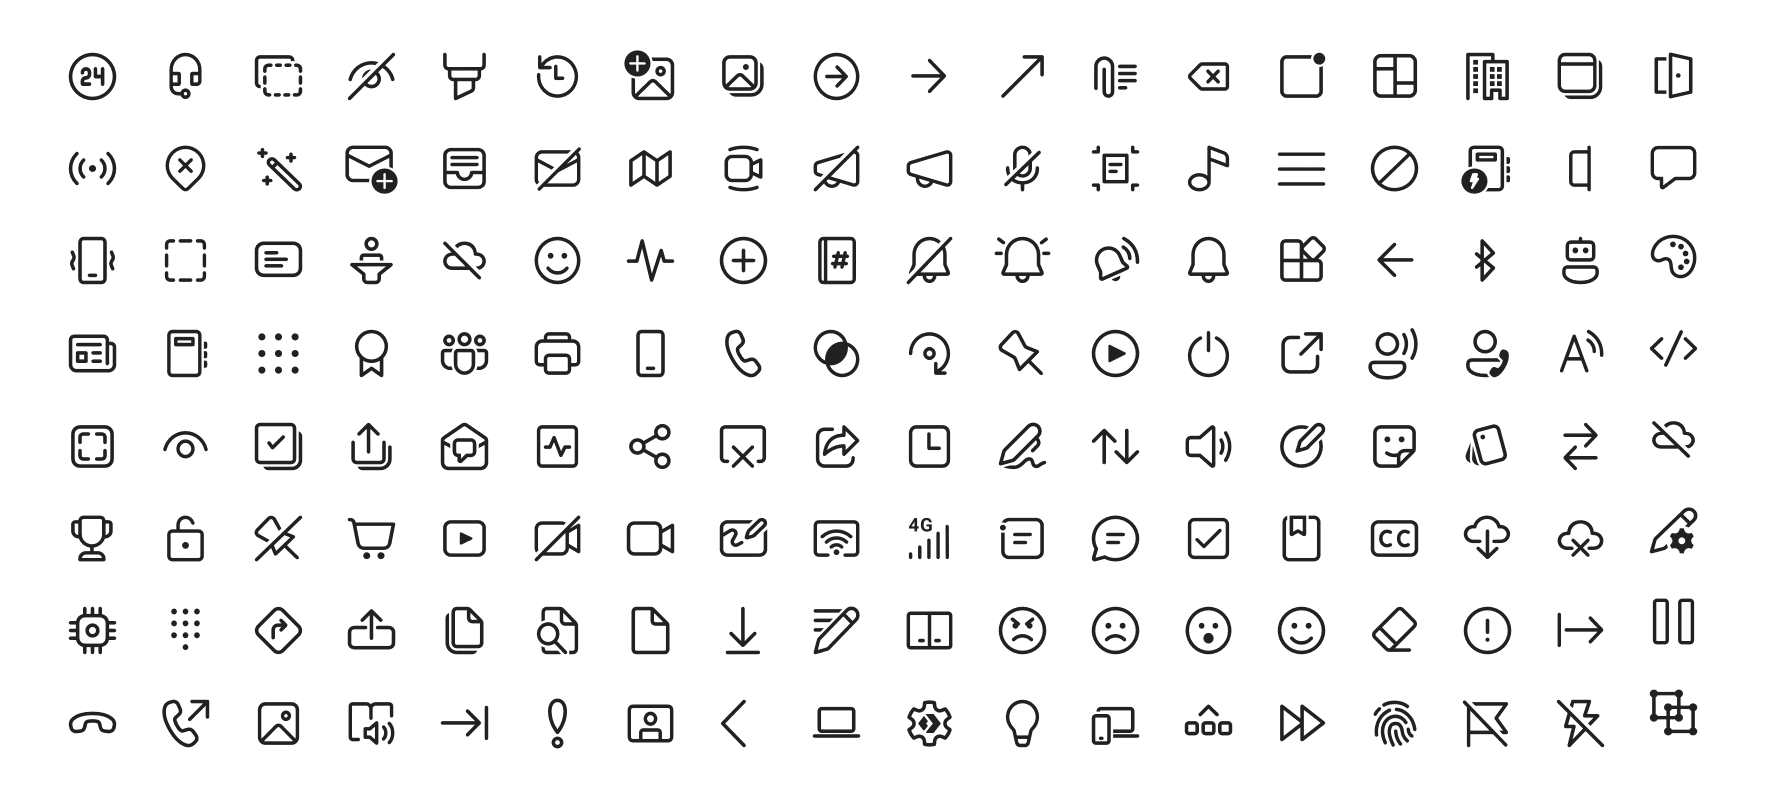 fluentui-system-icons